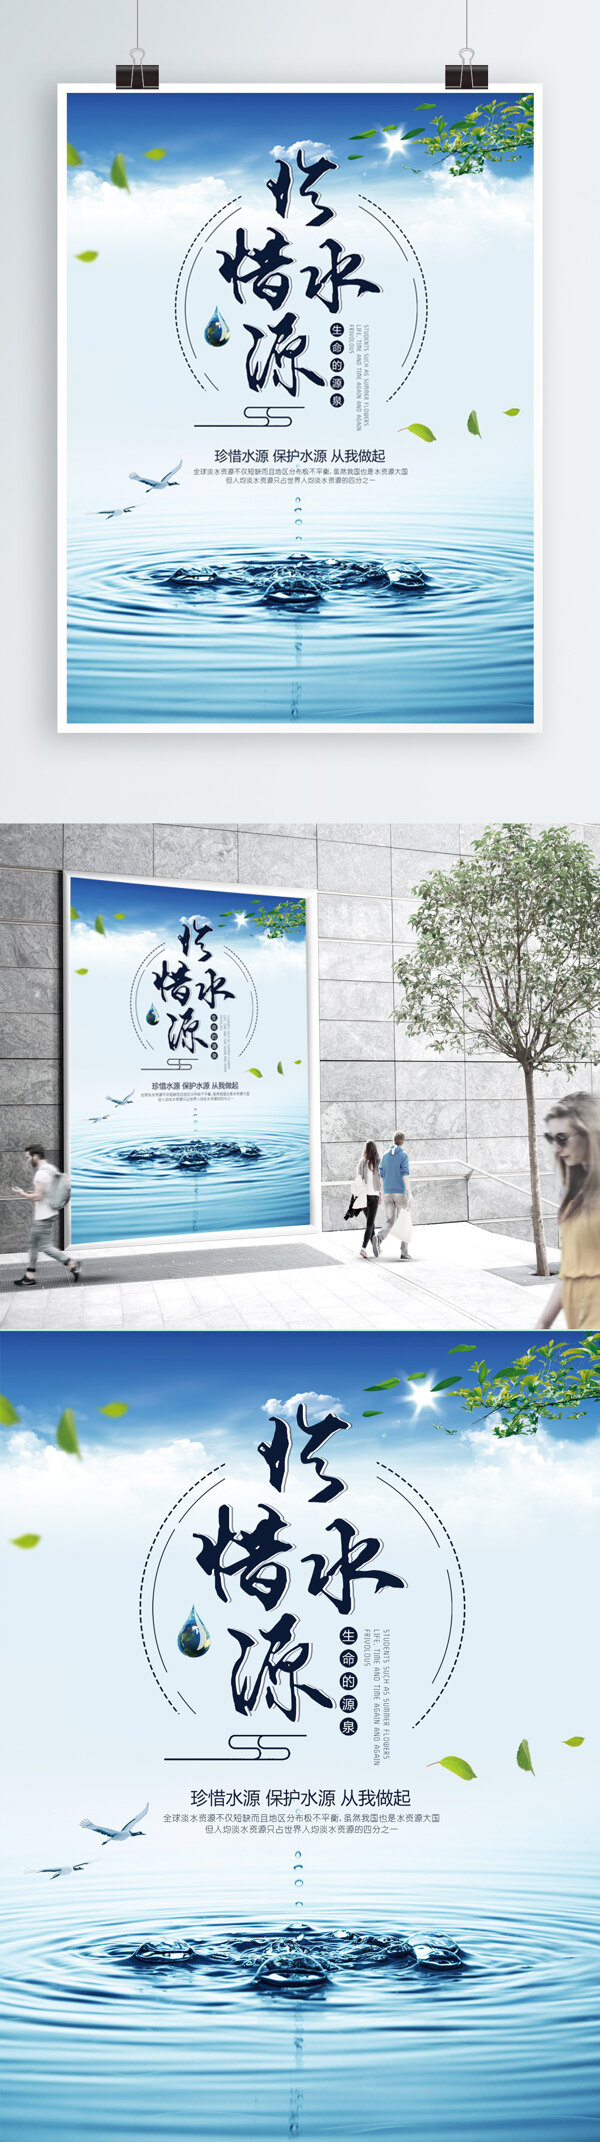 绿色珍惜水源爱护水源公益宣传海报